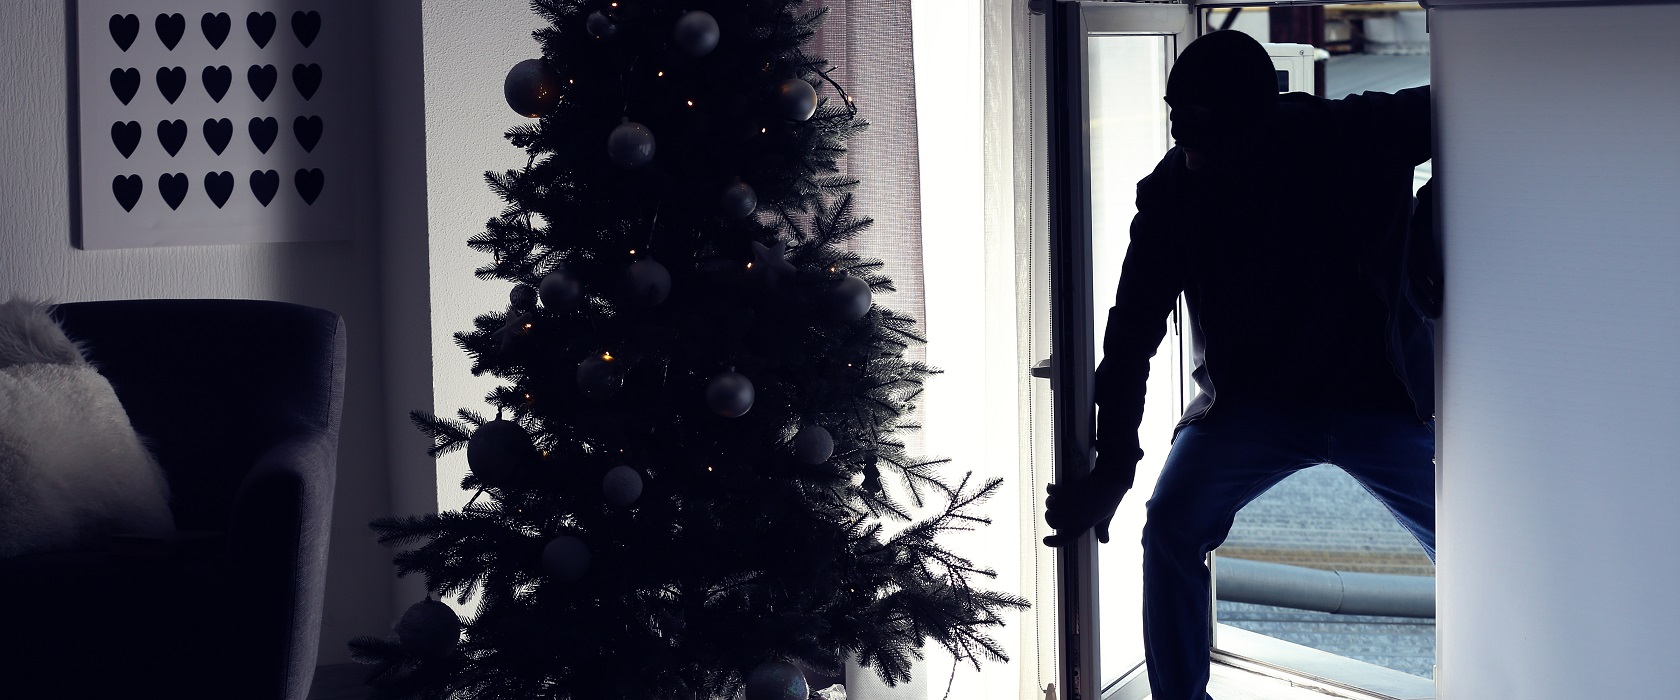 Bild Einbrecher und Weihnachtsbaum